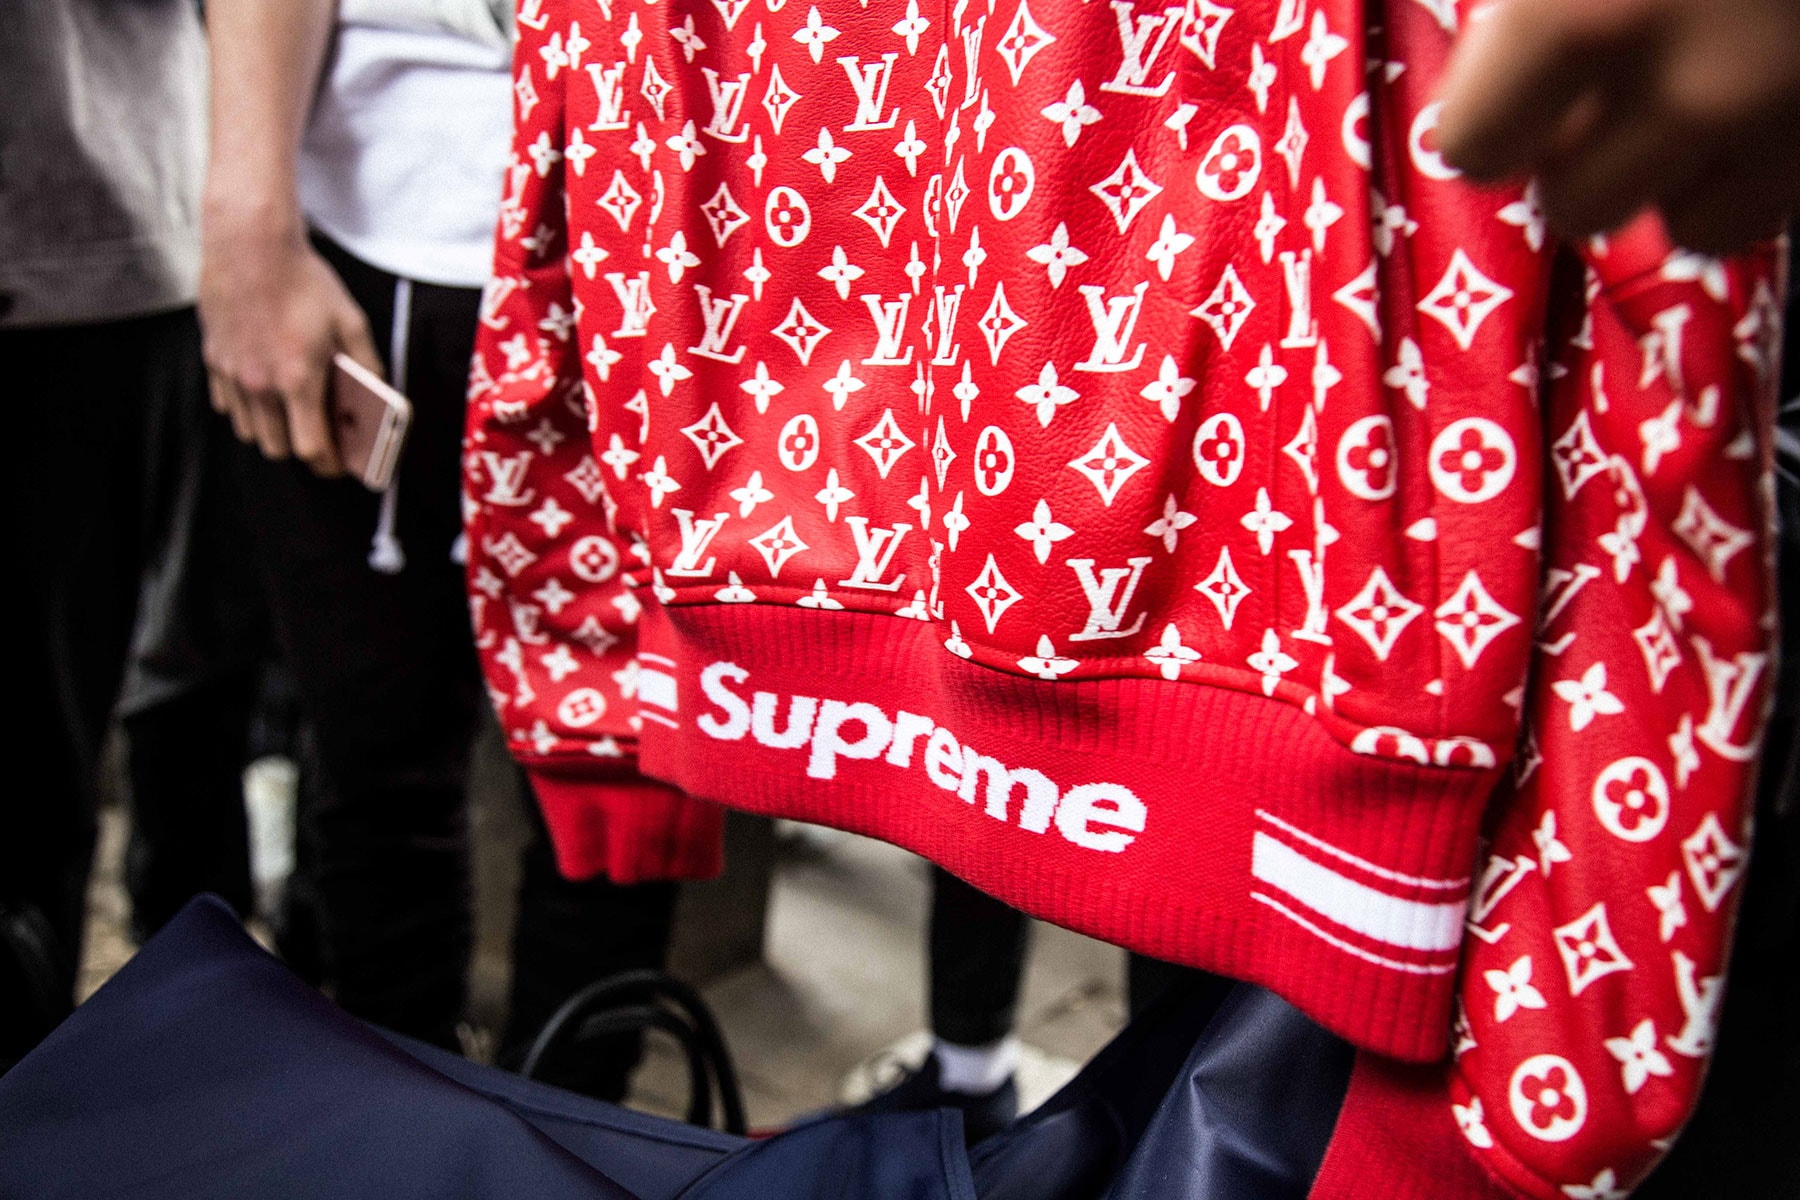 Louis Vuitton opens Supreme pop up shop in London